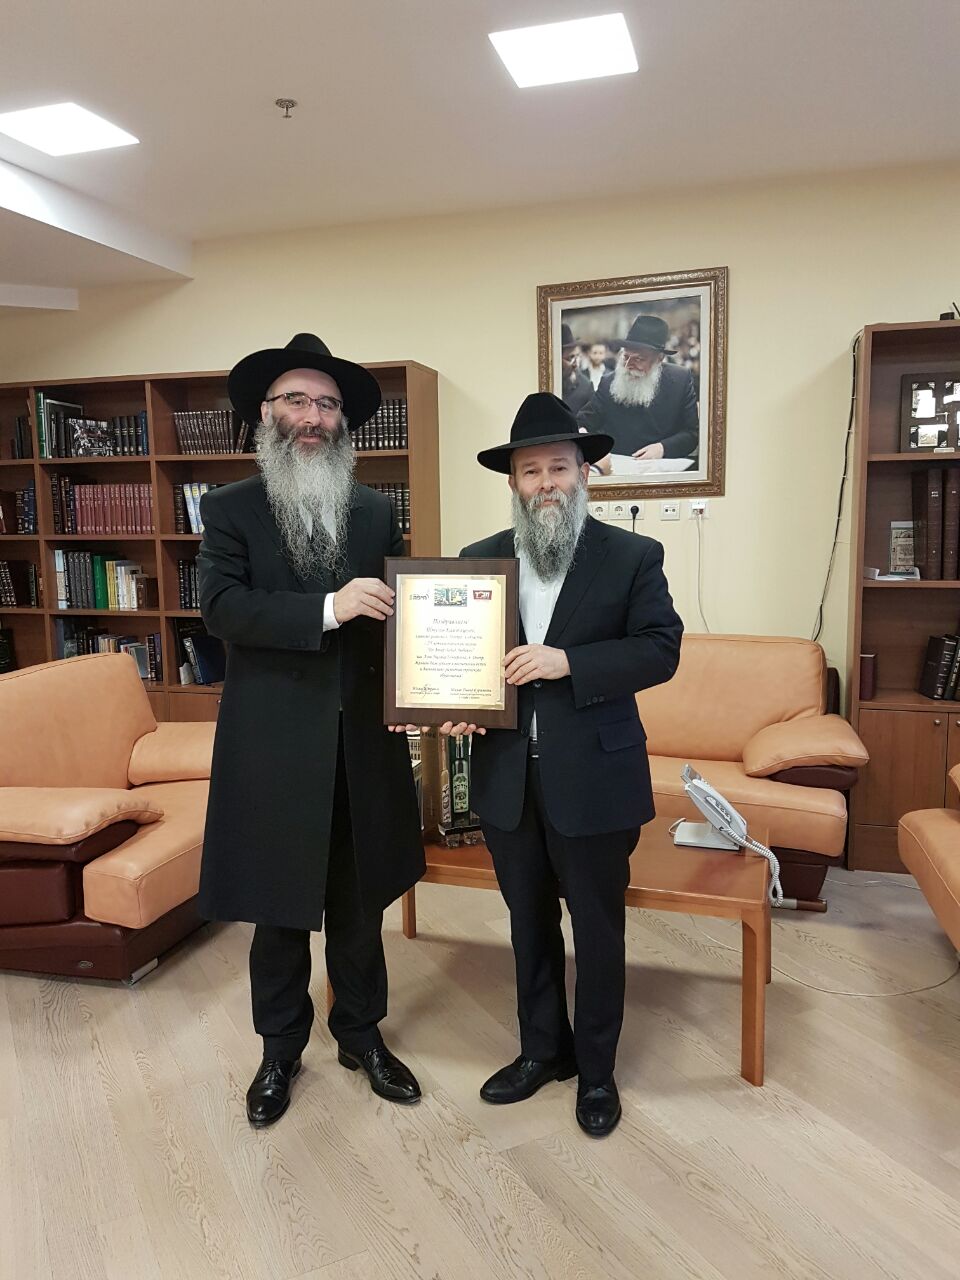 Рав Шауль Давид Бурштейн поздравил руководство еврейской школы Днепра с юбилеем